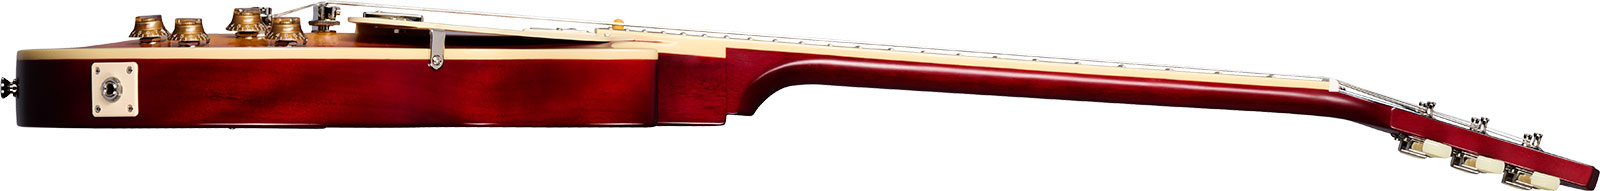 Epiphone 1959 Les Paul Standard Inspired By 2h Gibson Ht Lau - Vos Factory Burst - Guitarra eléctrica de corte único. - Variation 2